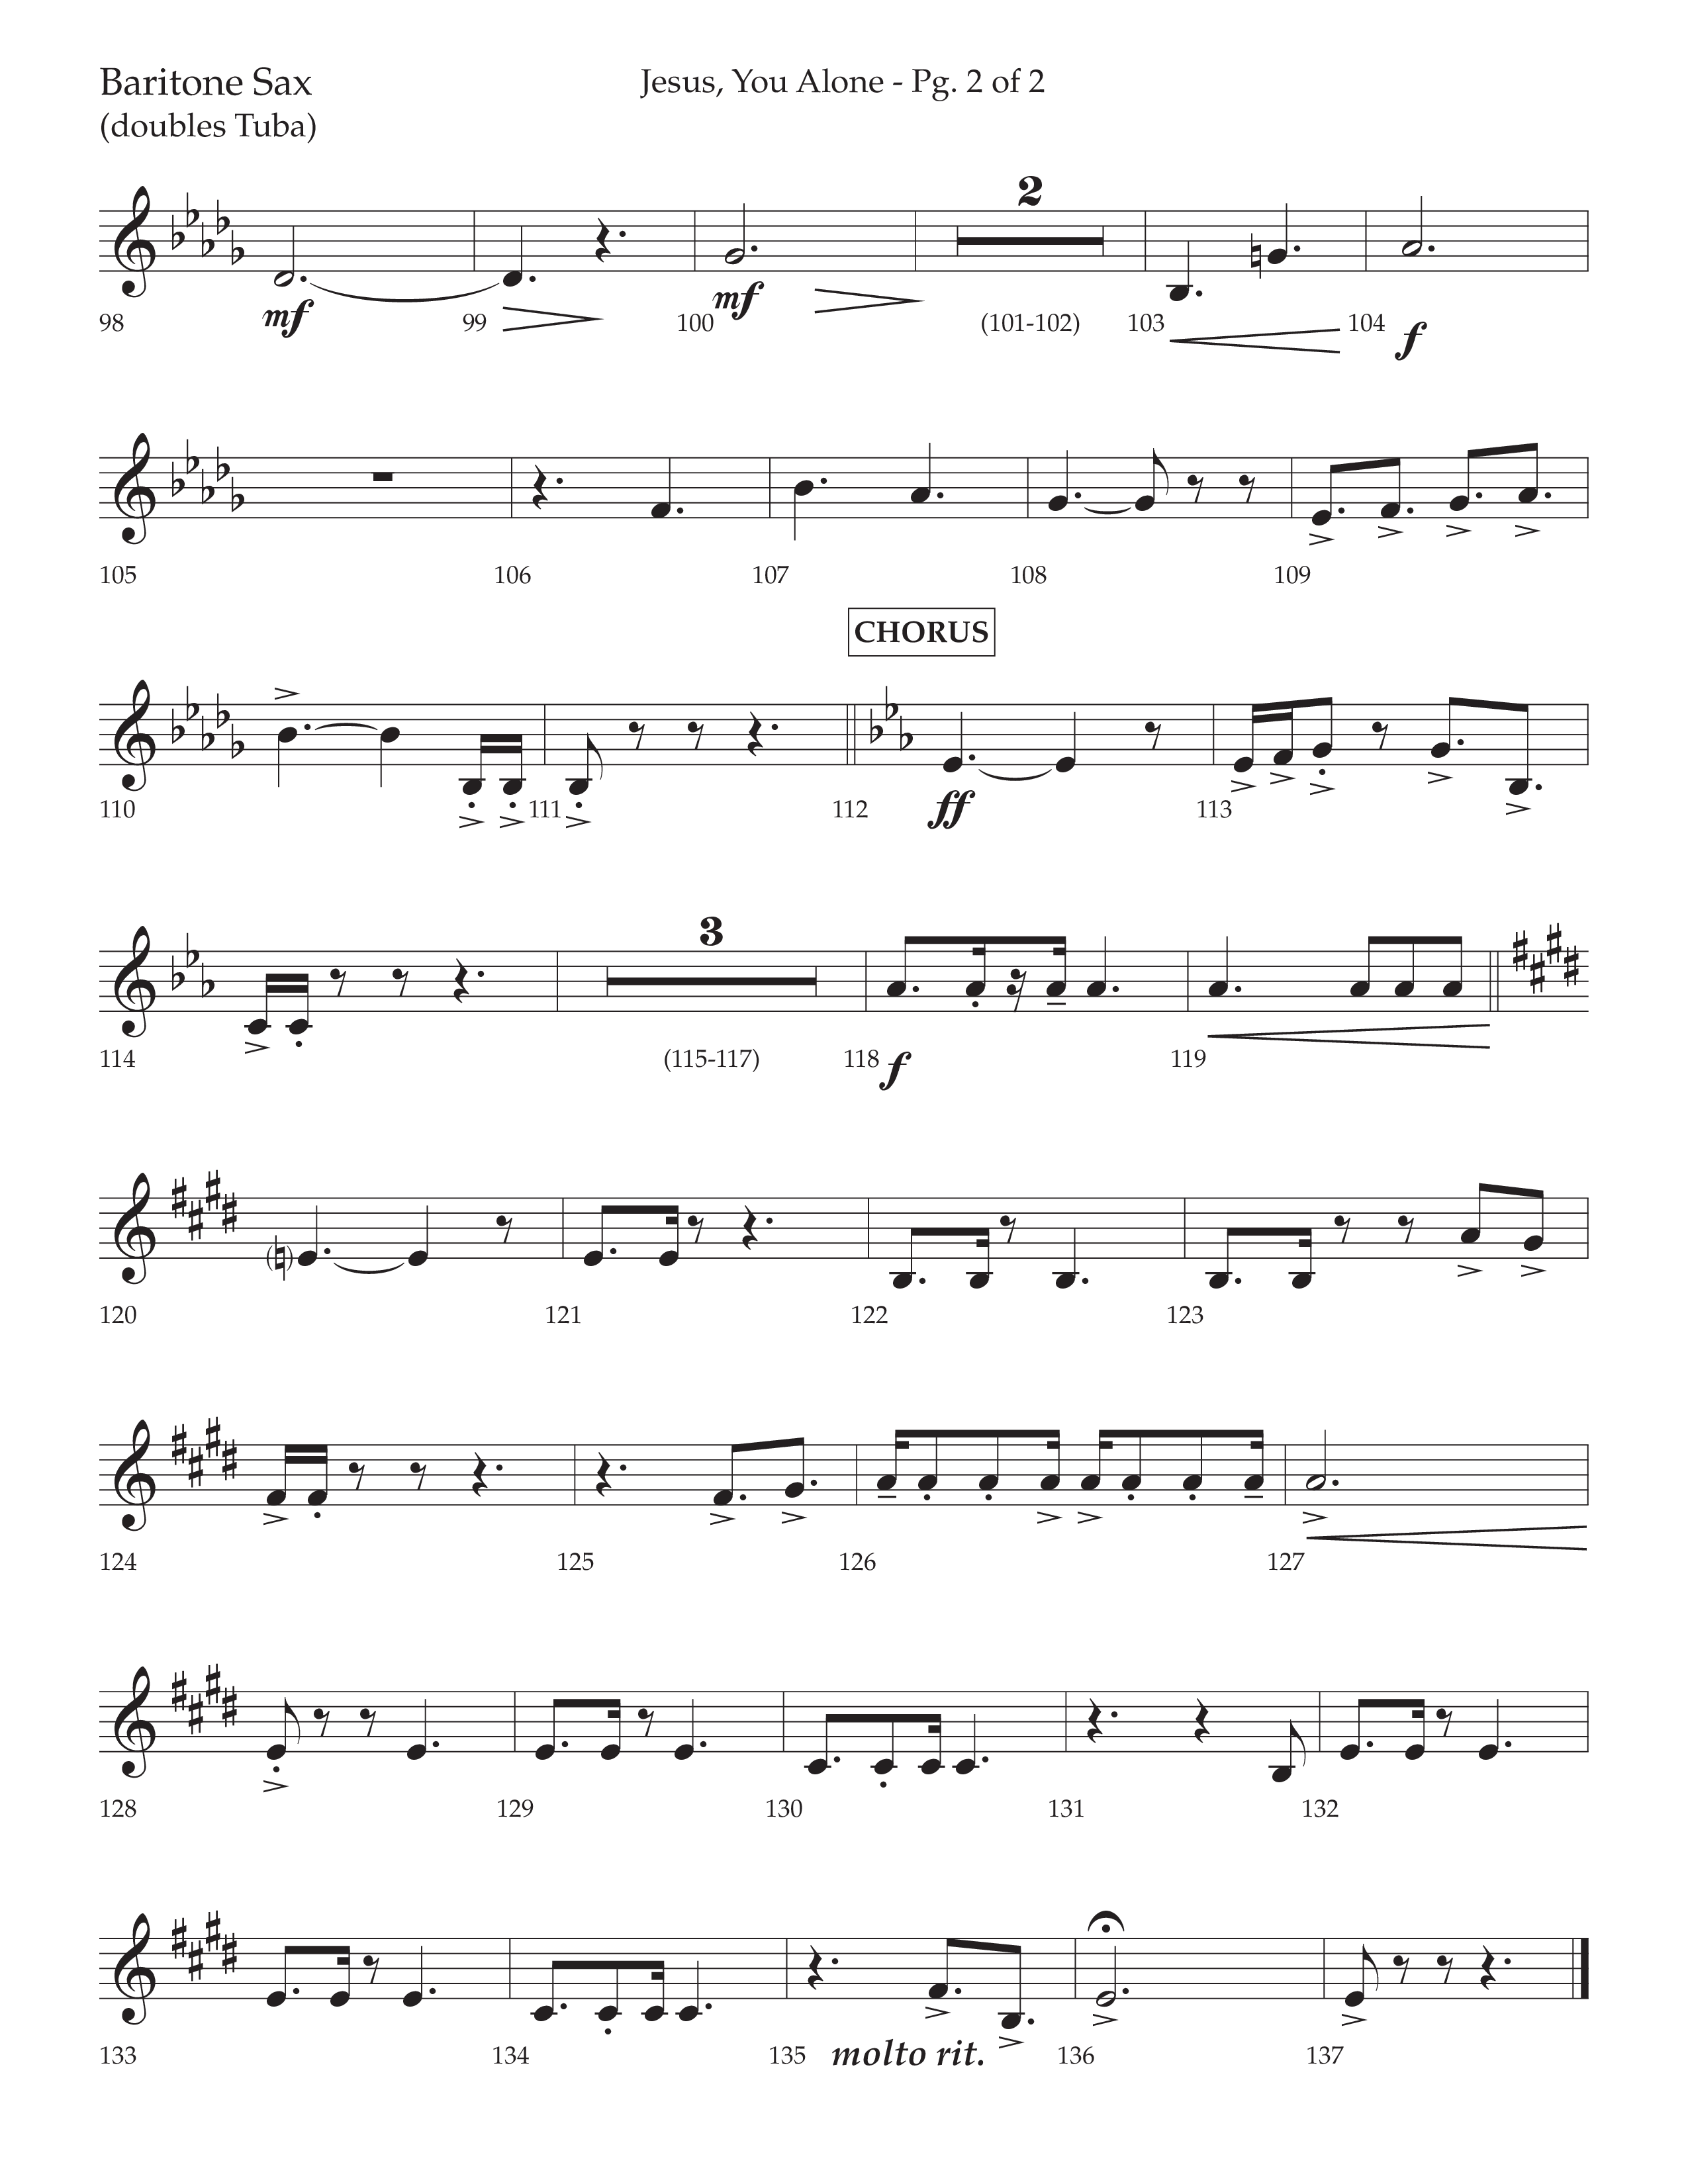 Jesus You Alone (Choral Anthem SATB) Bari Sax (Lifeway Choral / Arr. David Wise / Orch. Bradley Knight)